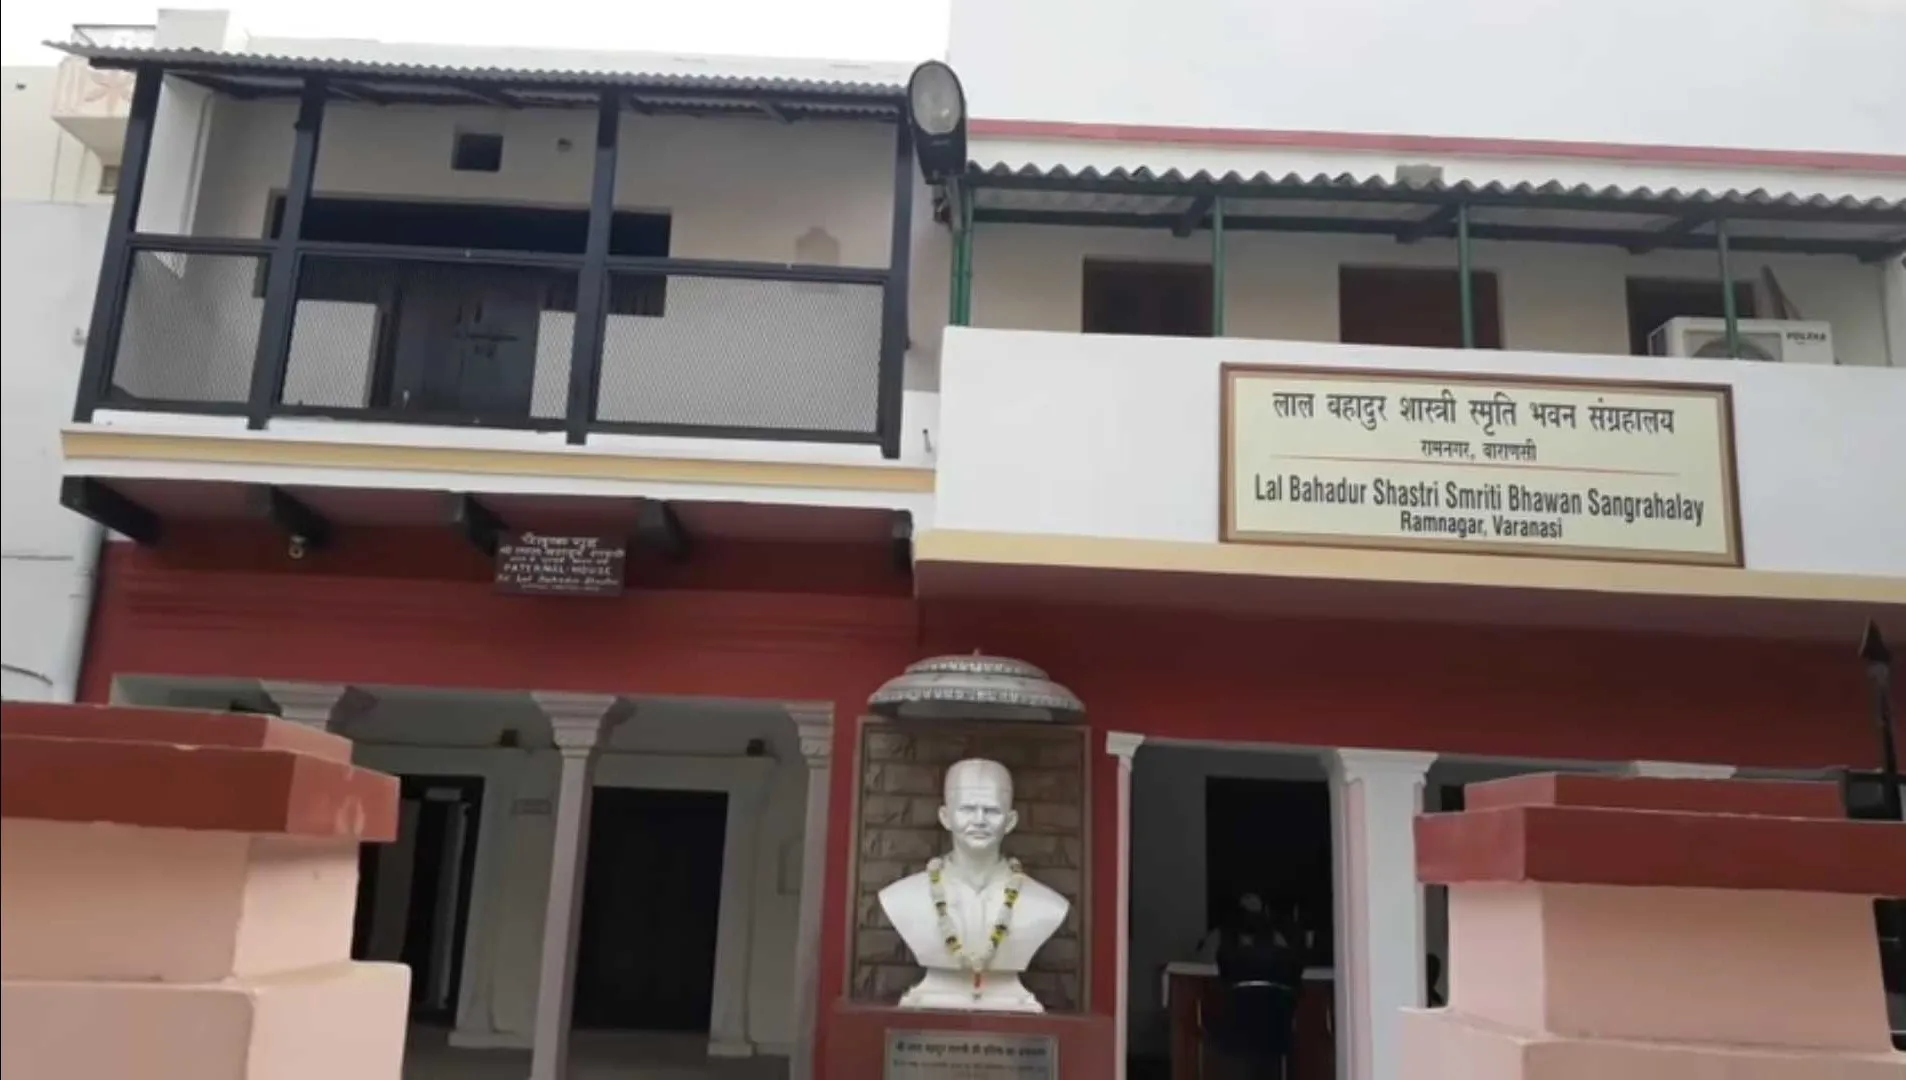 Lal Bahadur Shastri home in varanasi